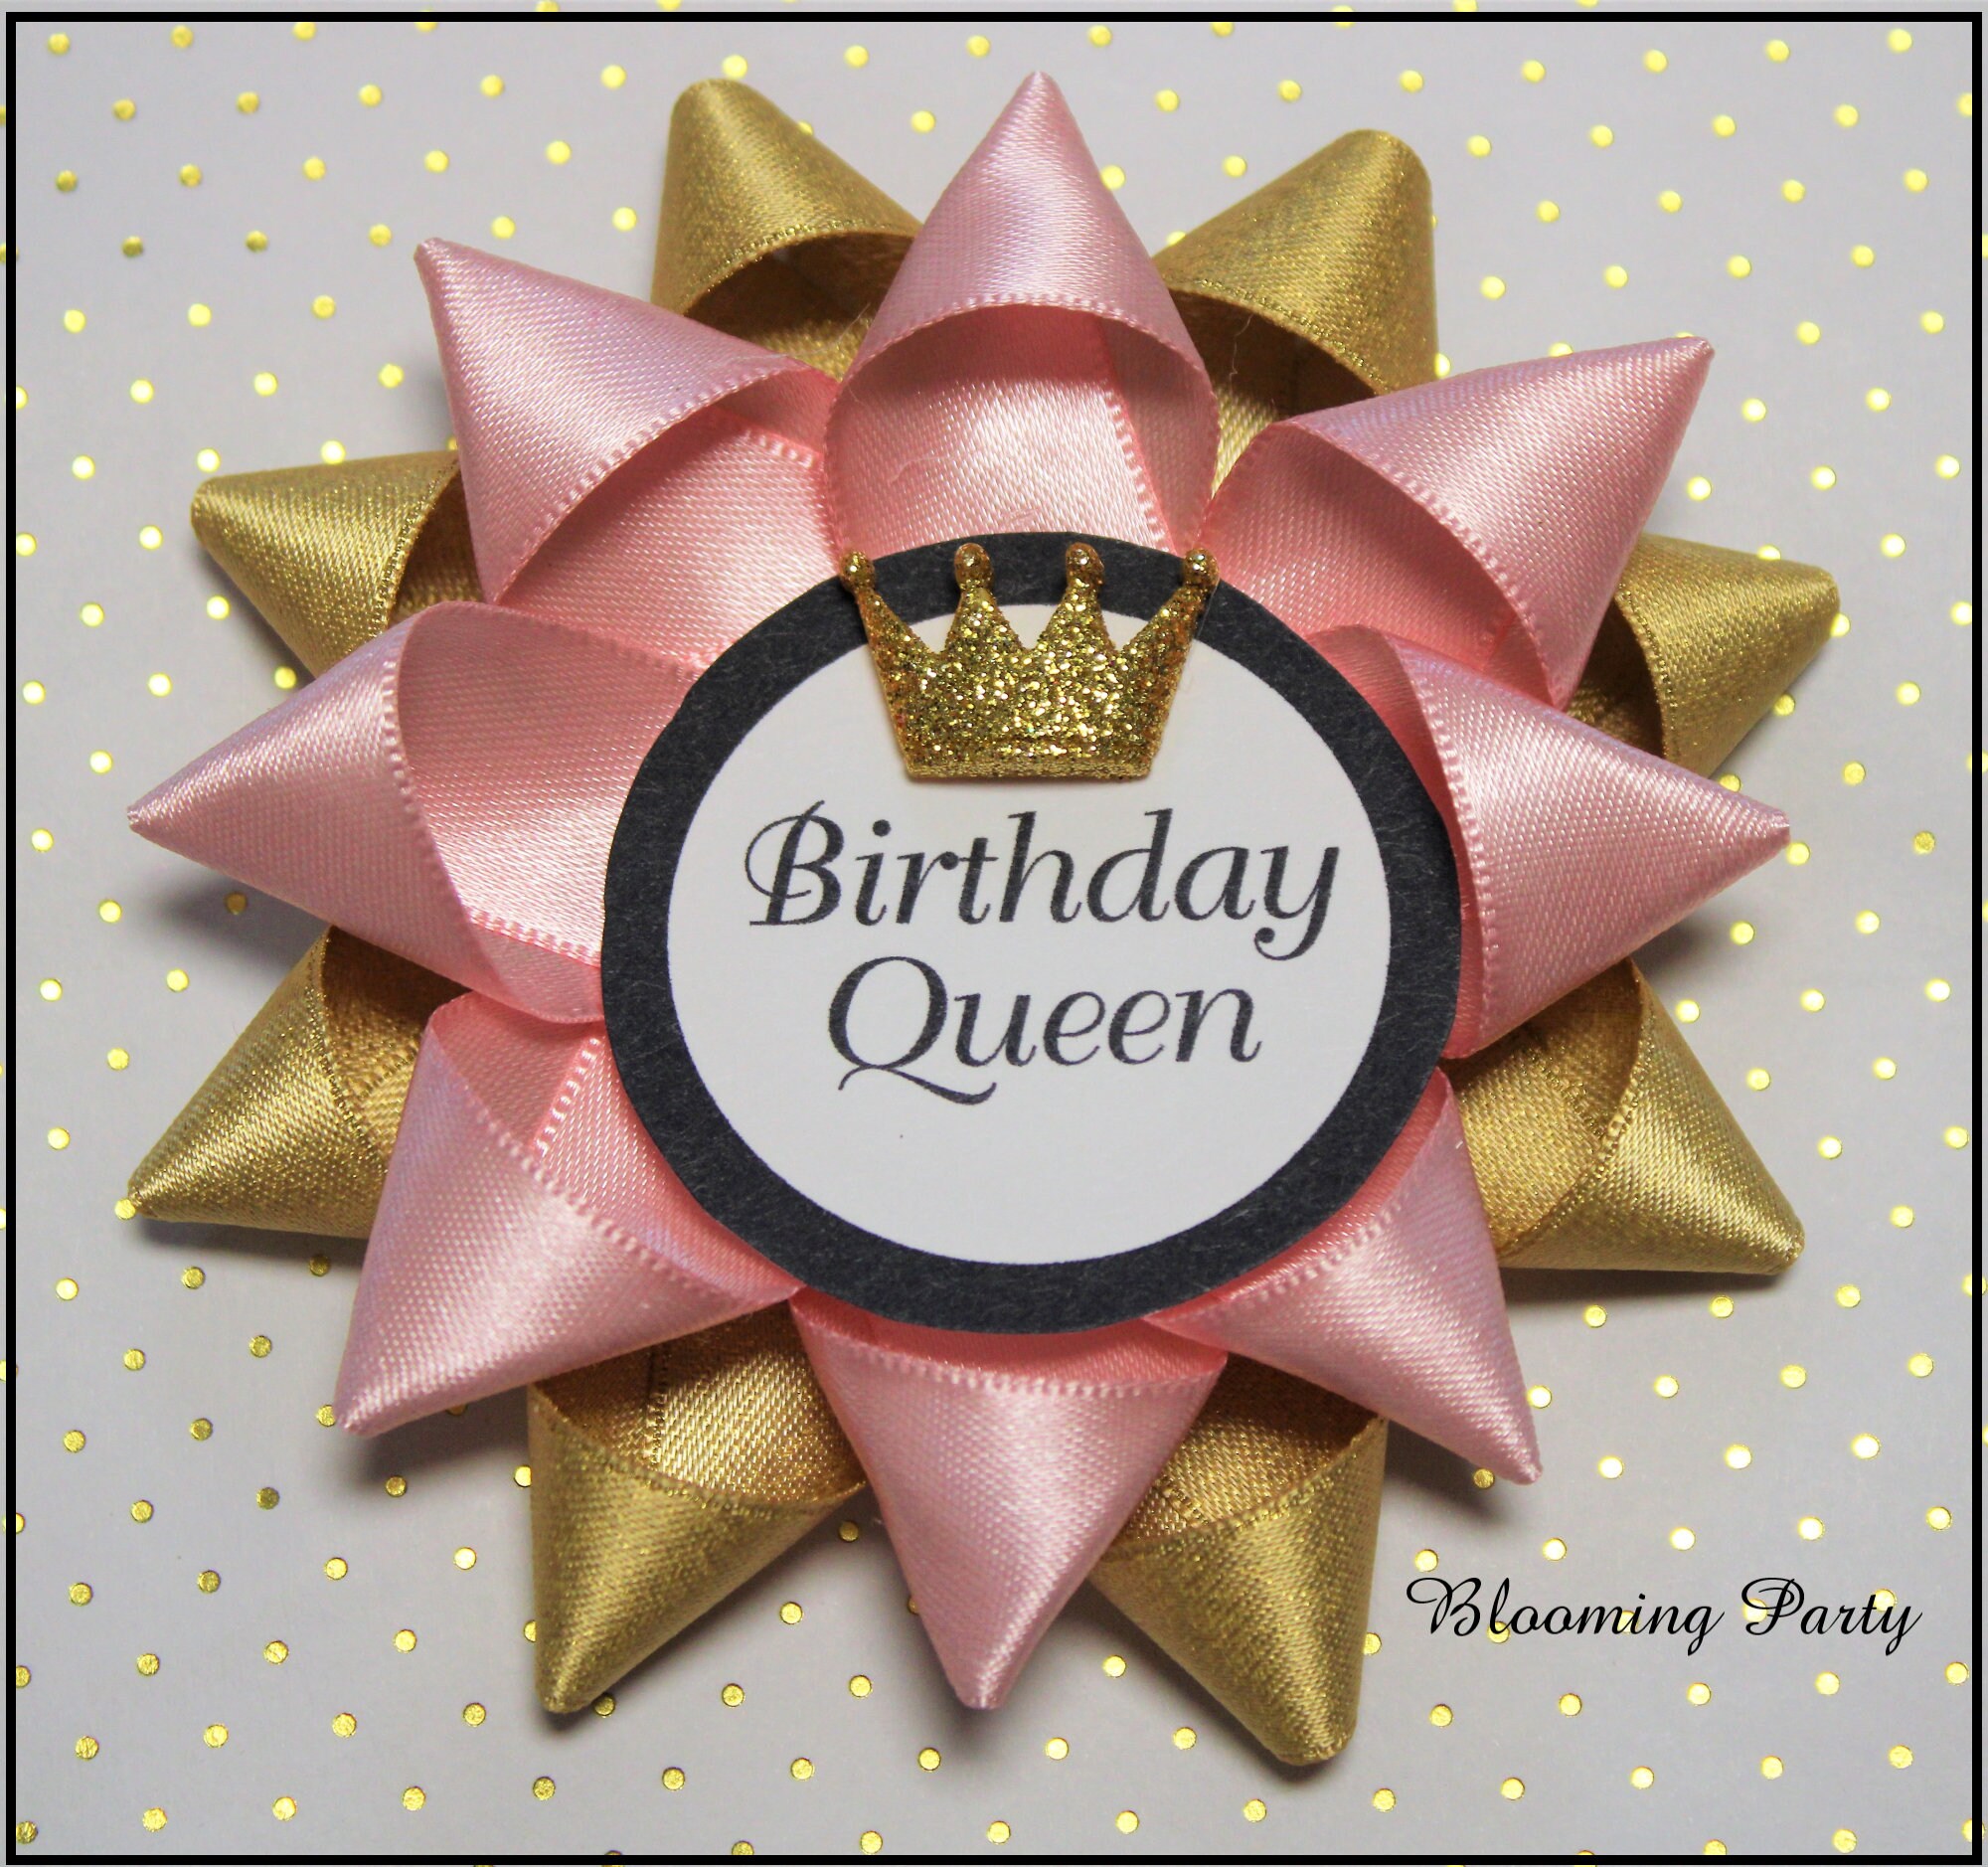 Birthday Party Decorations, Girls Birthday Ribbon, Birthday Girl